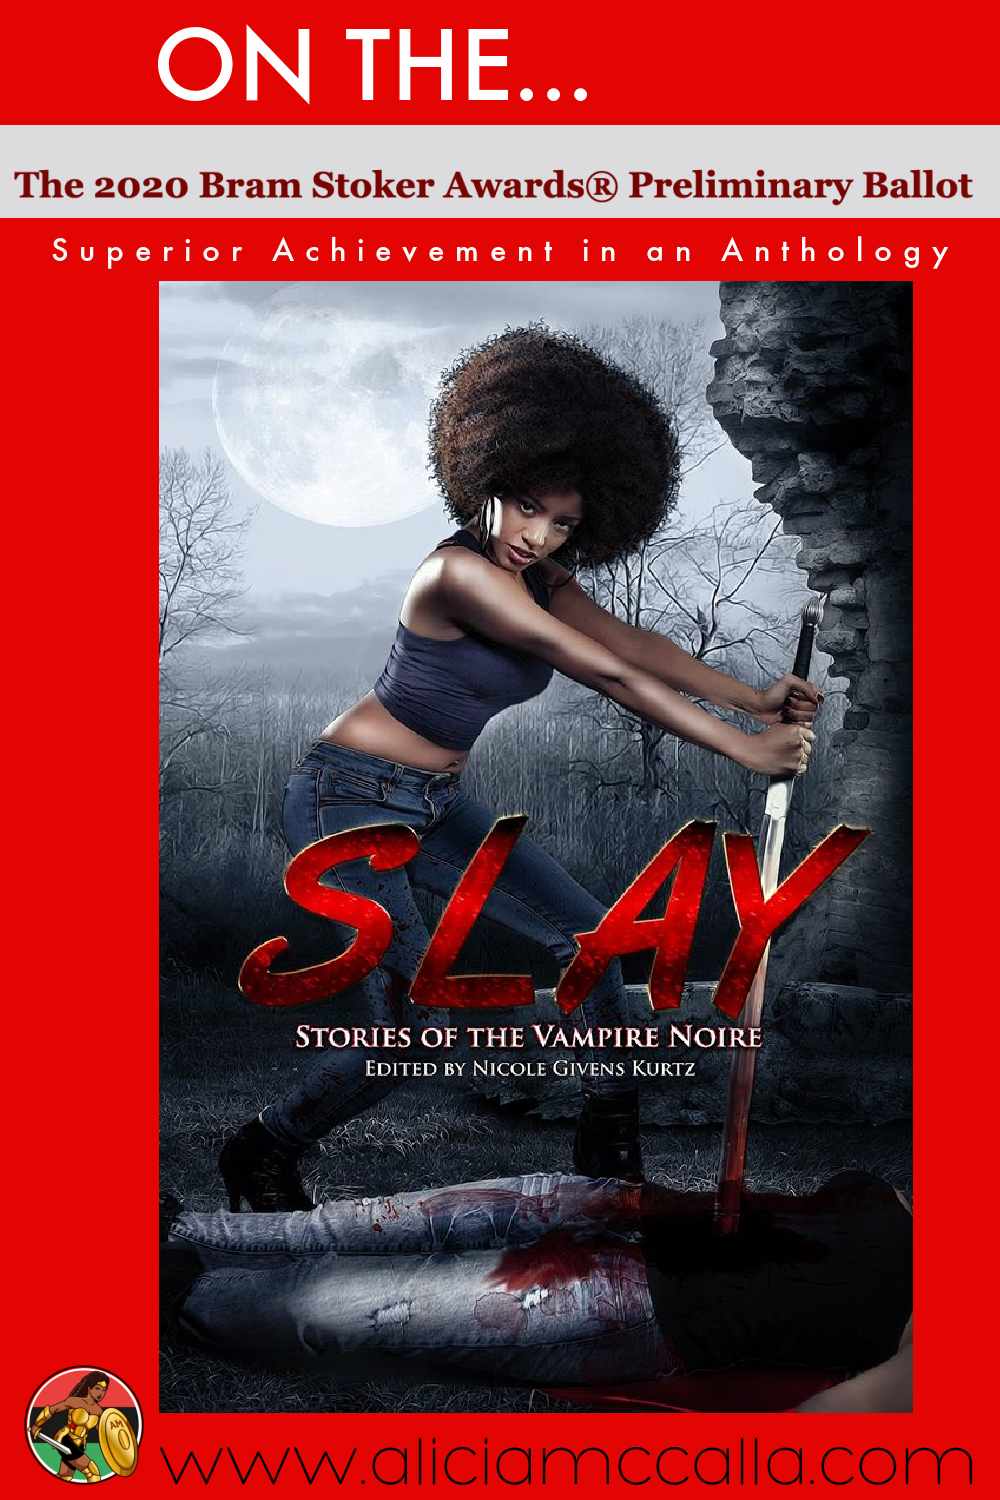 Slay: Stories of the Vampire Noire is on the 2020 Bram Stoker Awards Preliminary Ballot!